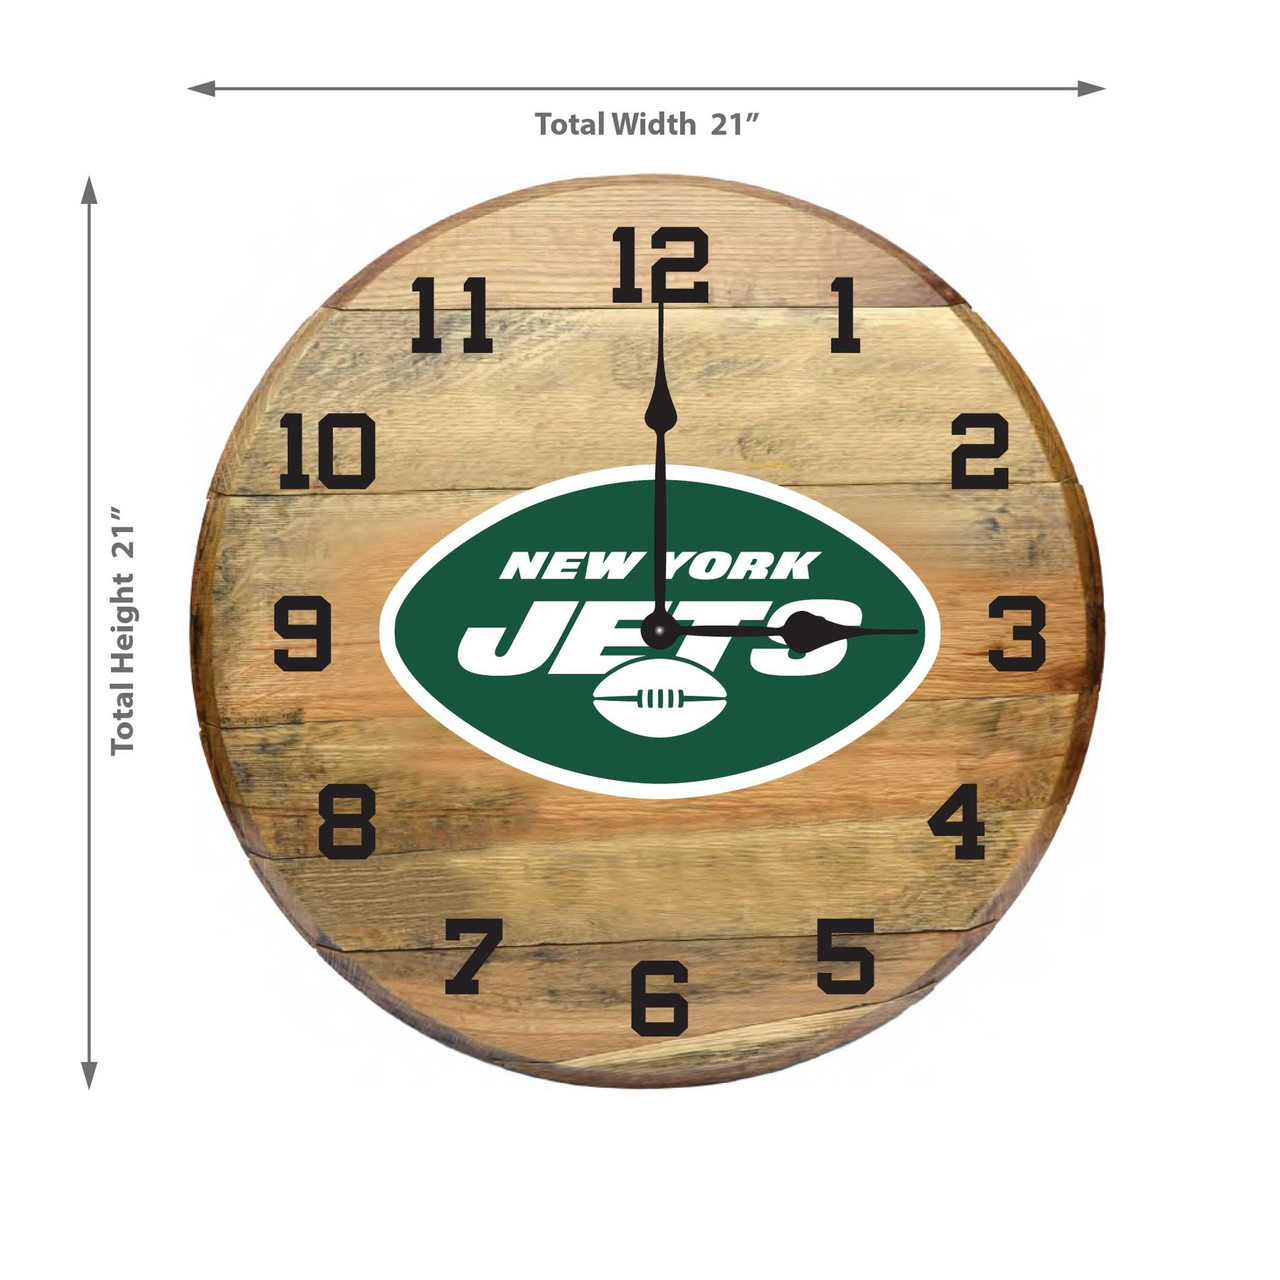 630-1038, New York Jets, 720801904108, Oak, Barrel, Clock, Kentucky, oak charred, whiskey, top, NFL